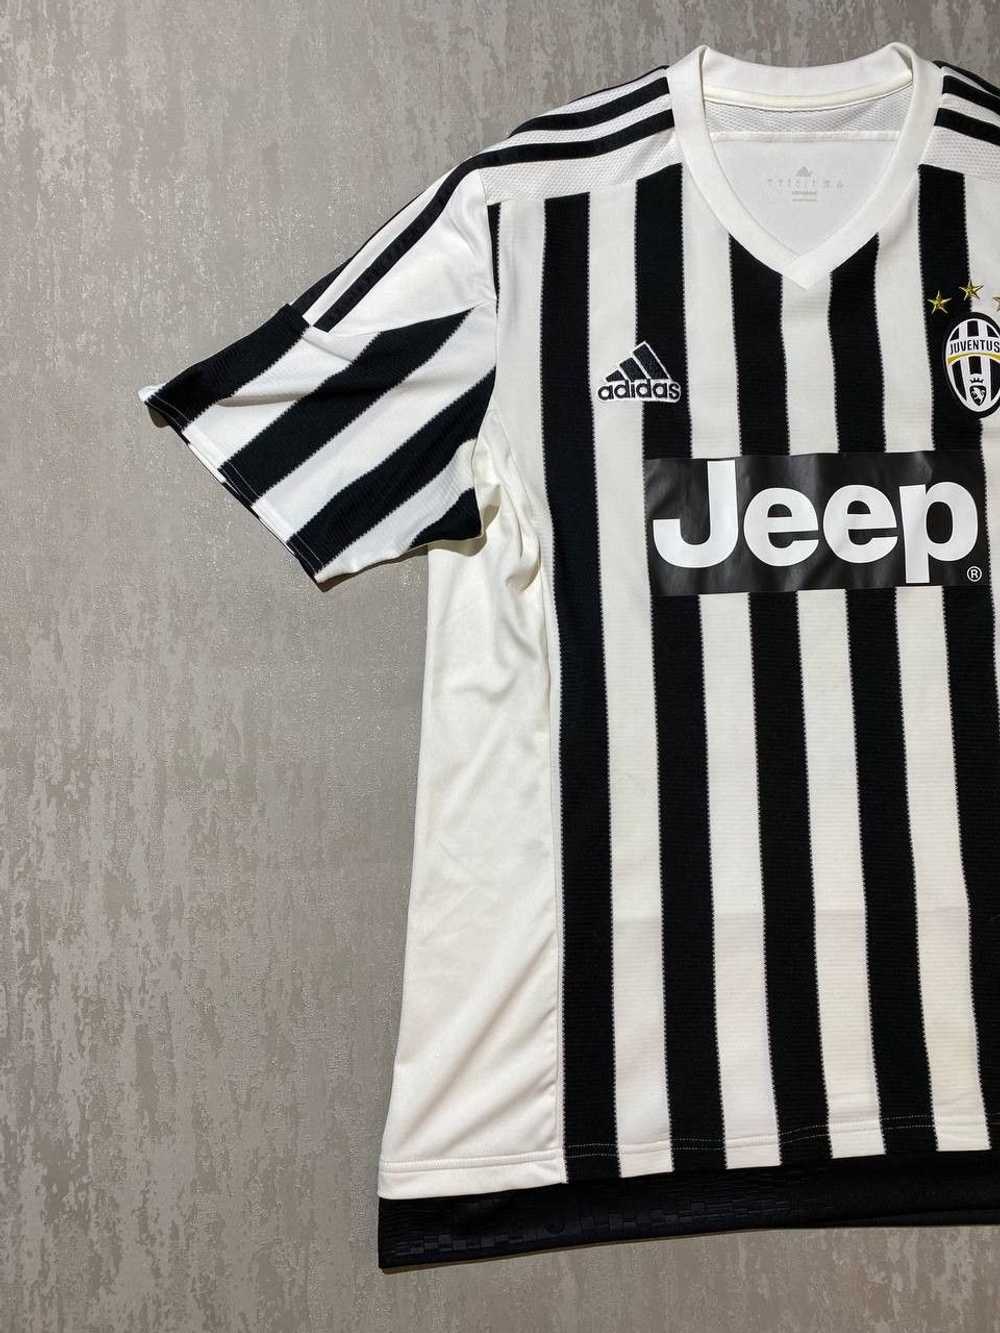 Adidas × Soccer Jersey × Vintage Adidas Juventus … - image 2